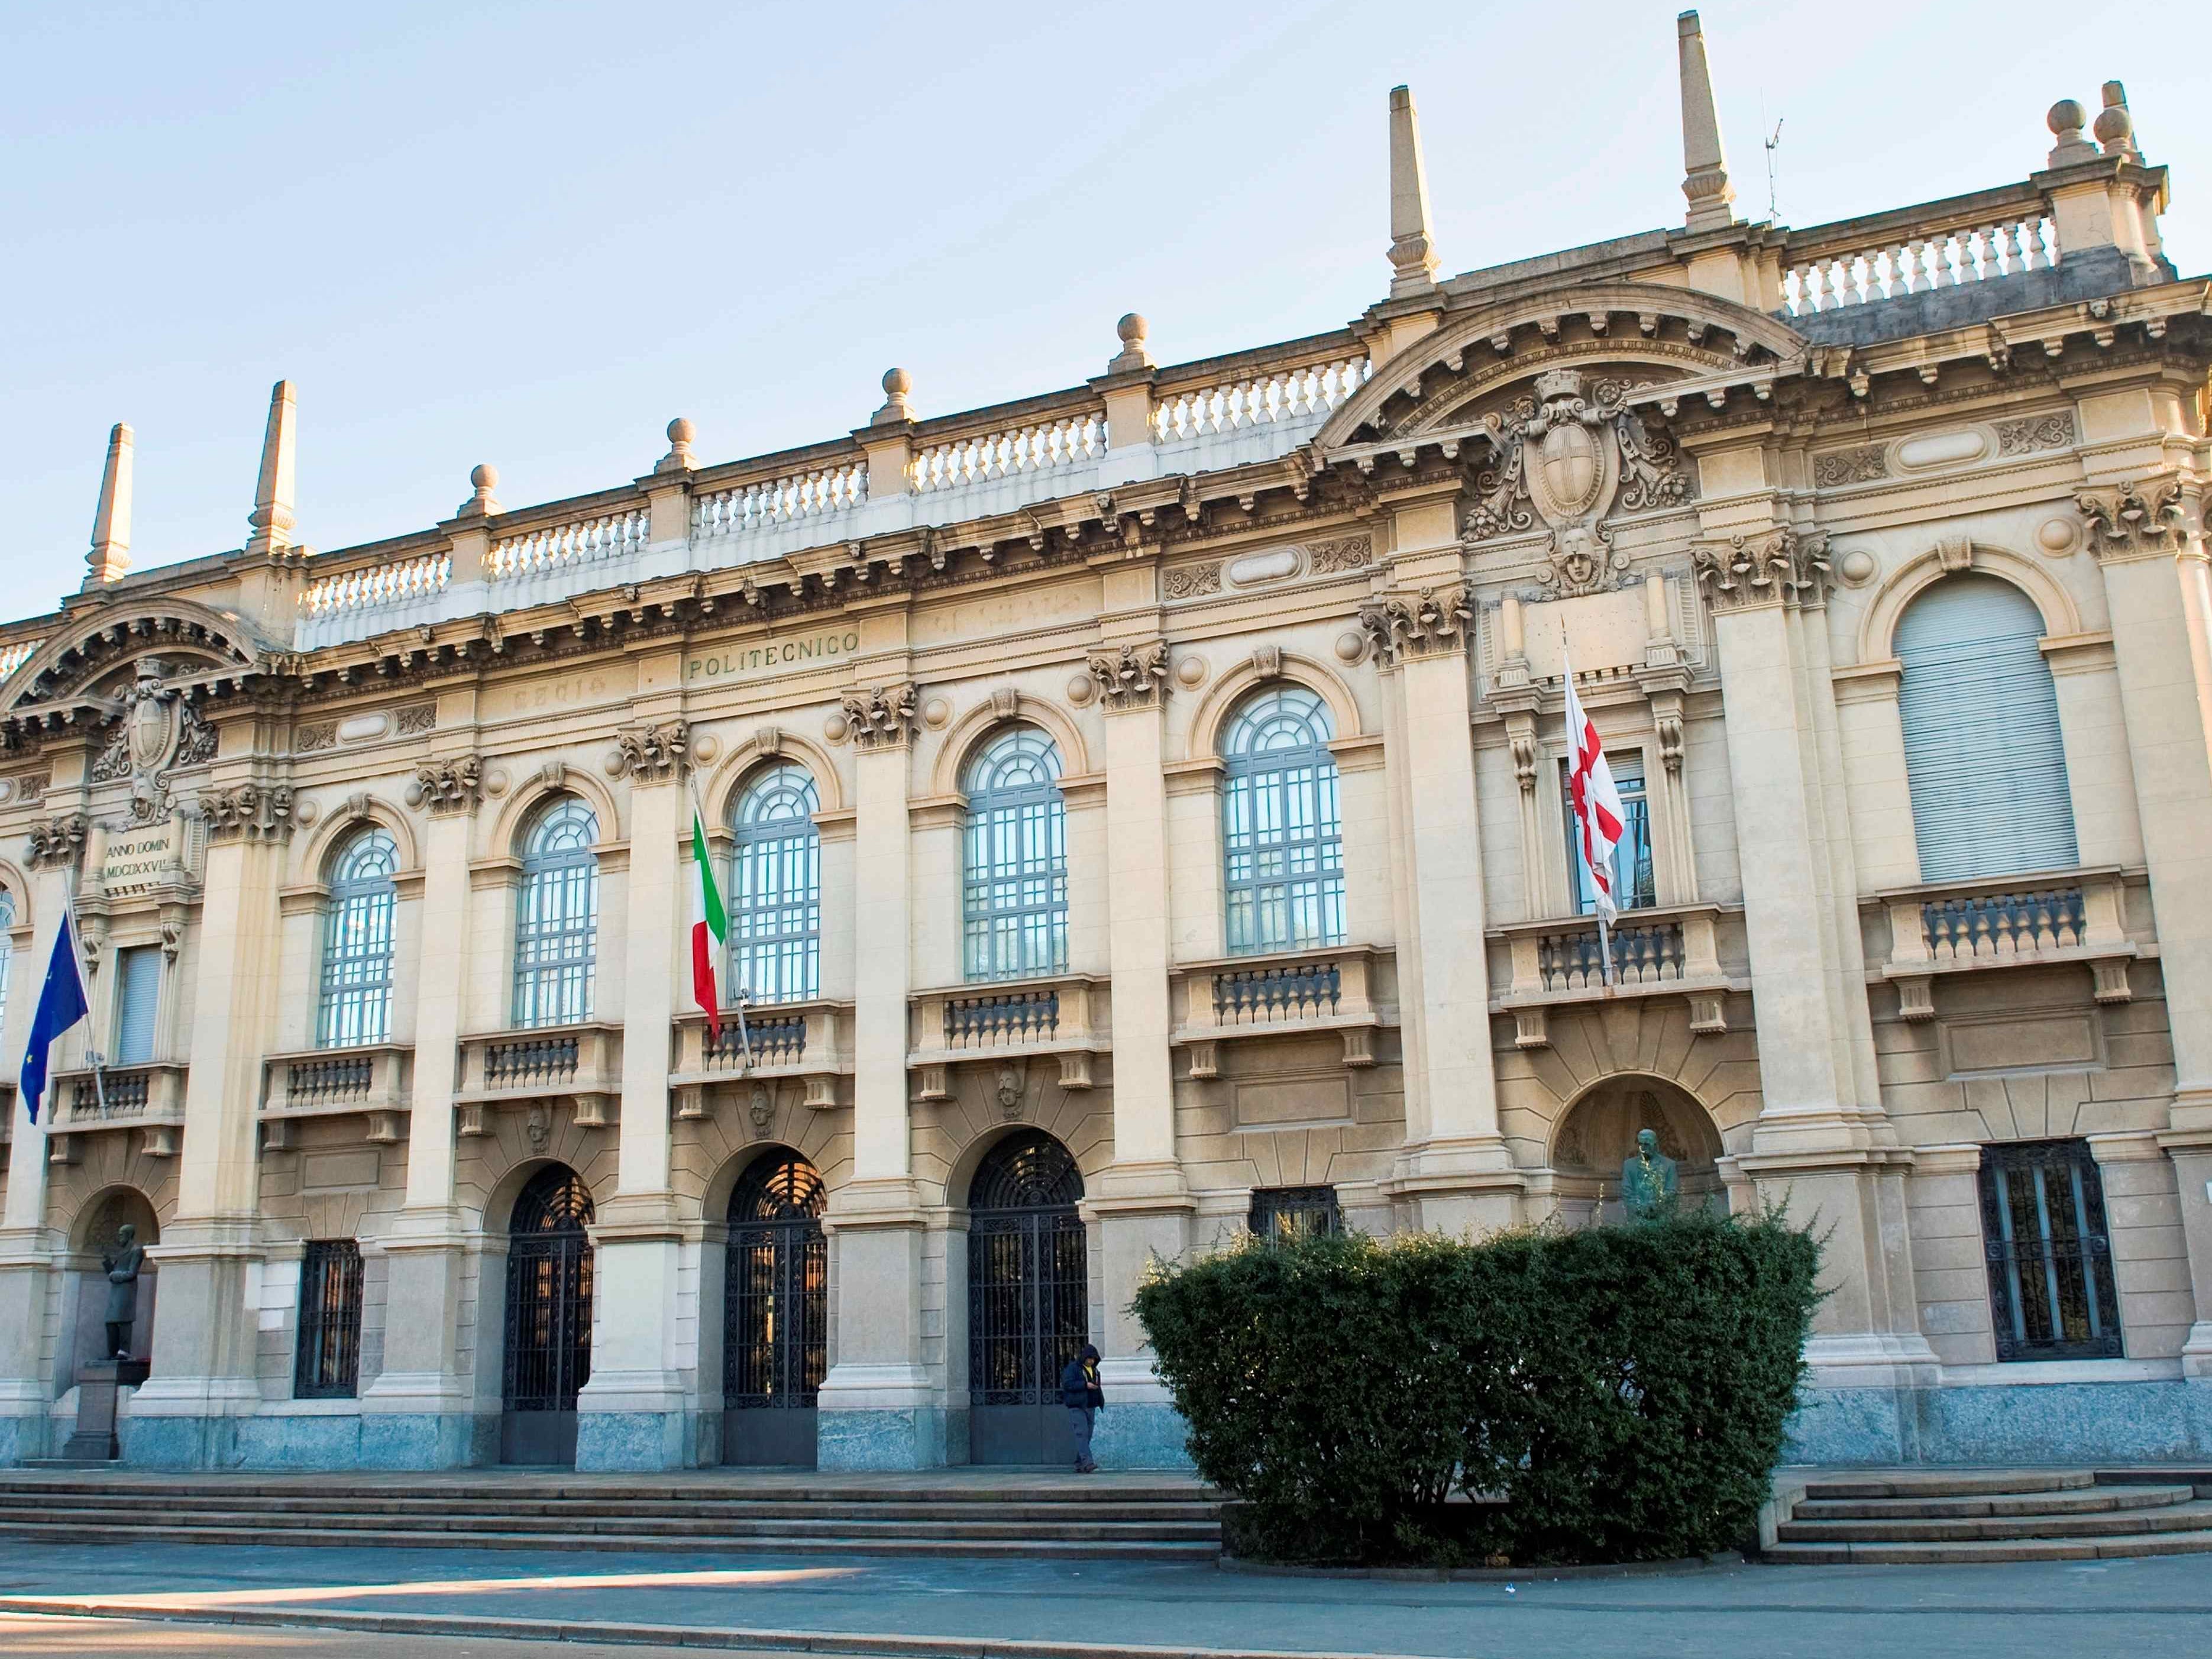 Das Politechnico di Milano – ein prächtiges, altes Gebäude mit großen Fenstern.